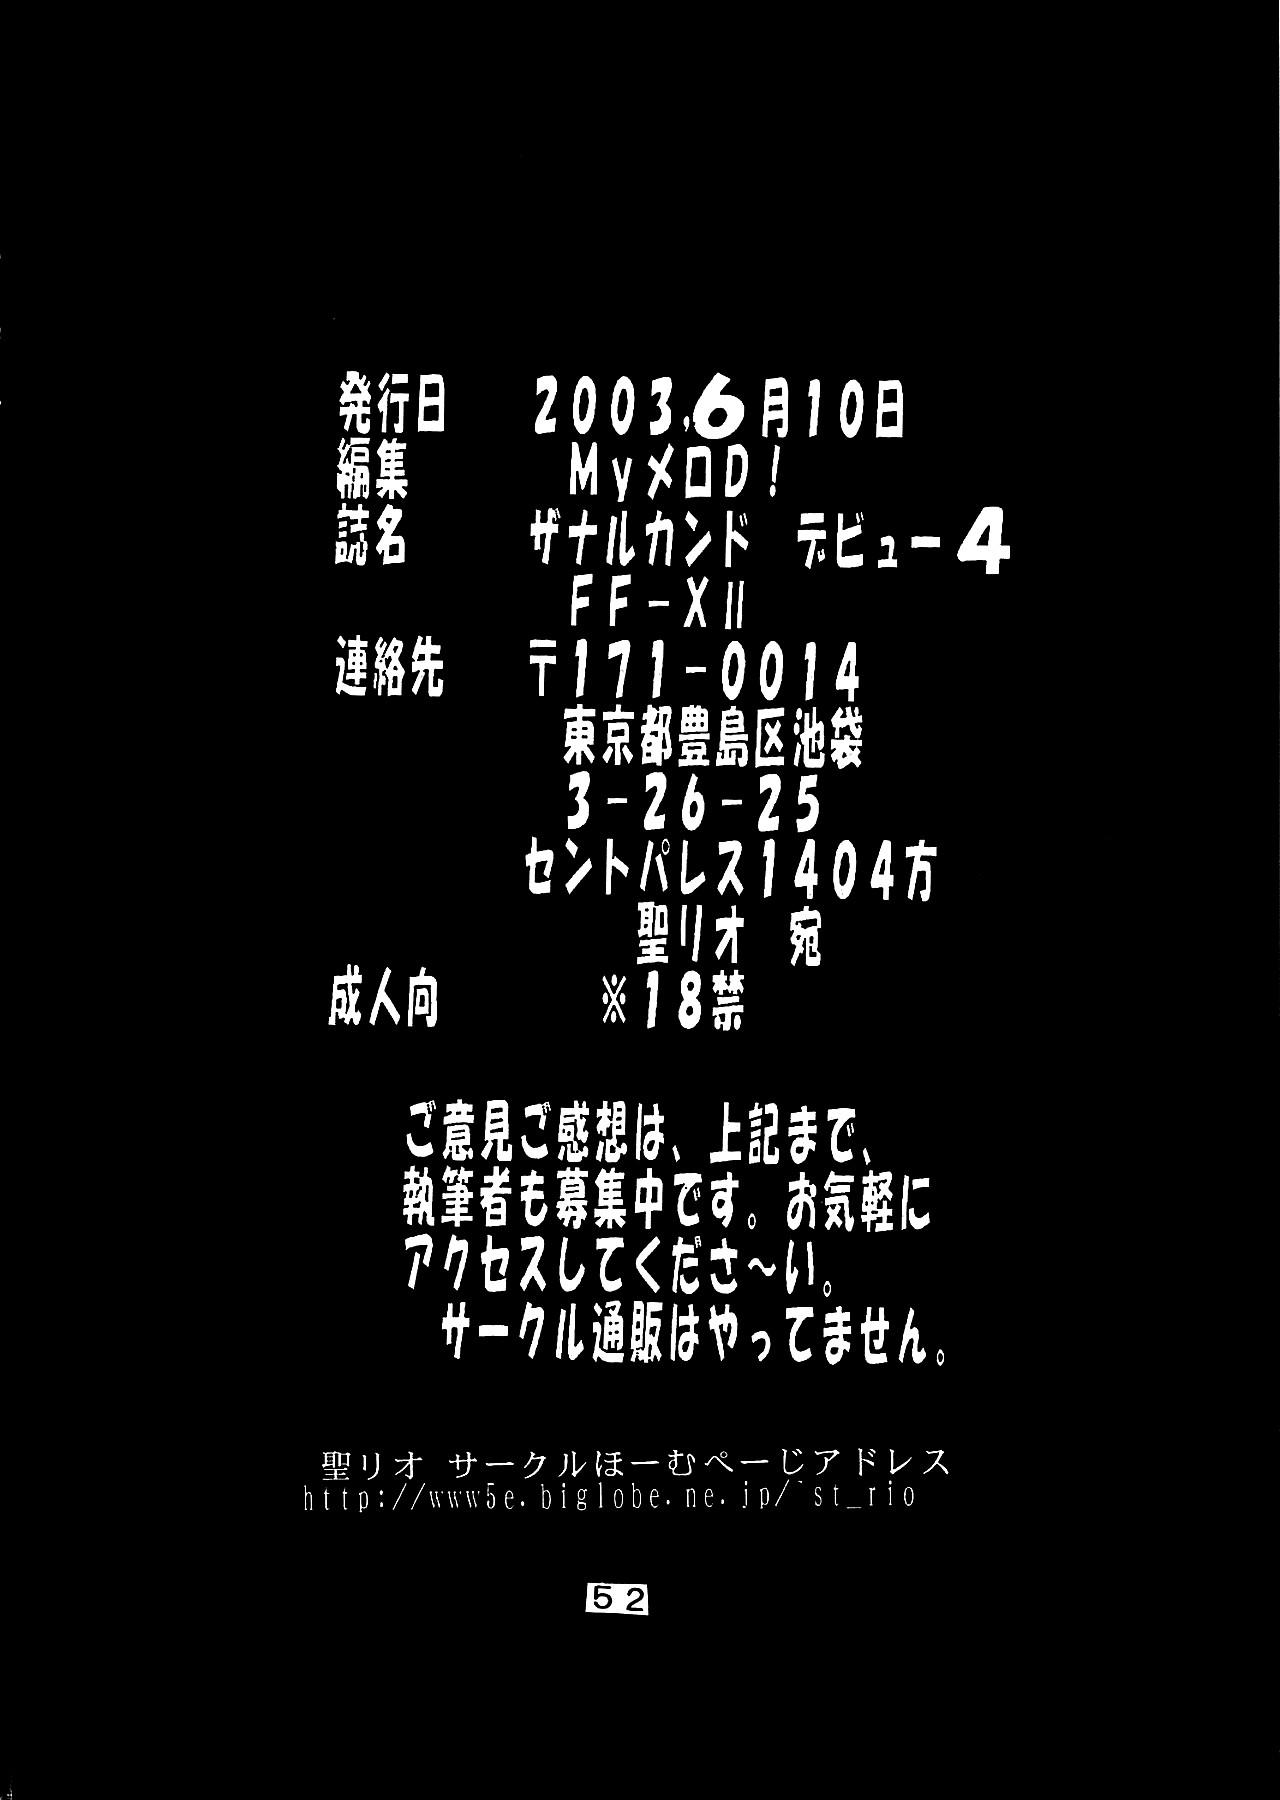 Yuna A La Mode 8 Xanarkand Debut 4 52